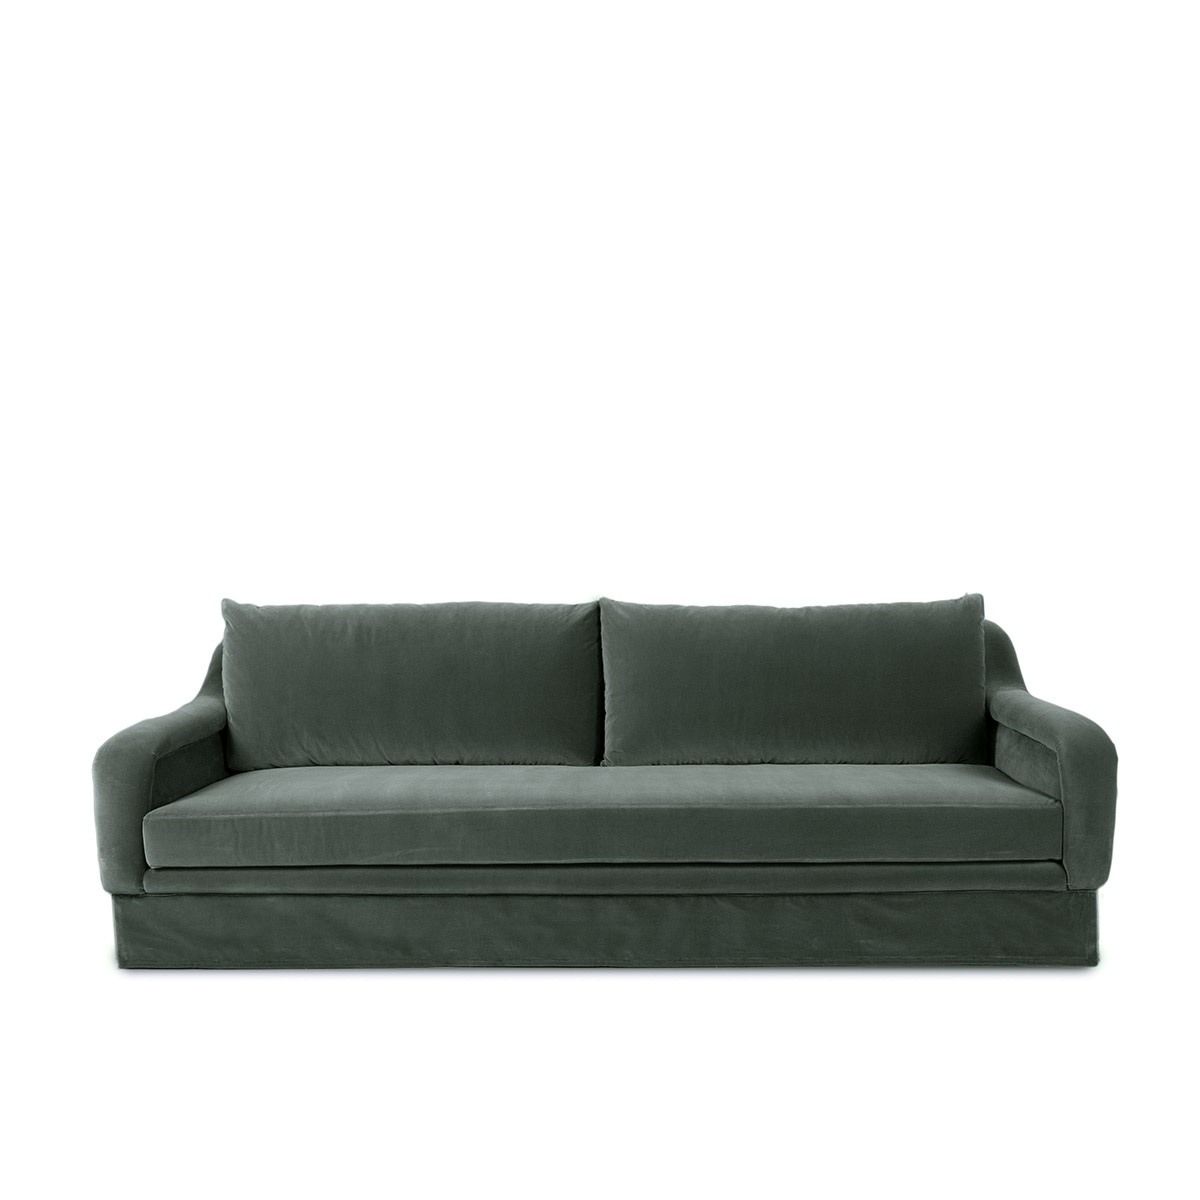 Sofa Yasmine, W250 x D105 x H88 cm / Khaki / Velvet - image 1